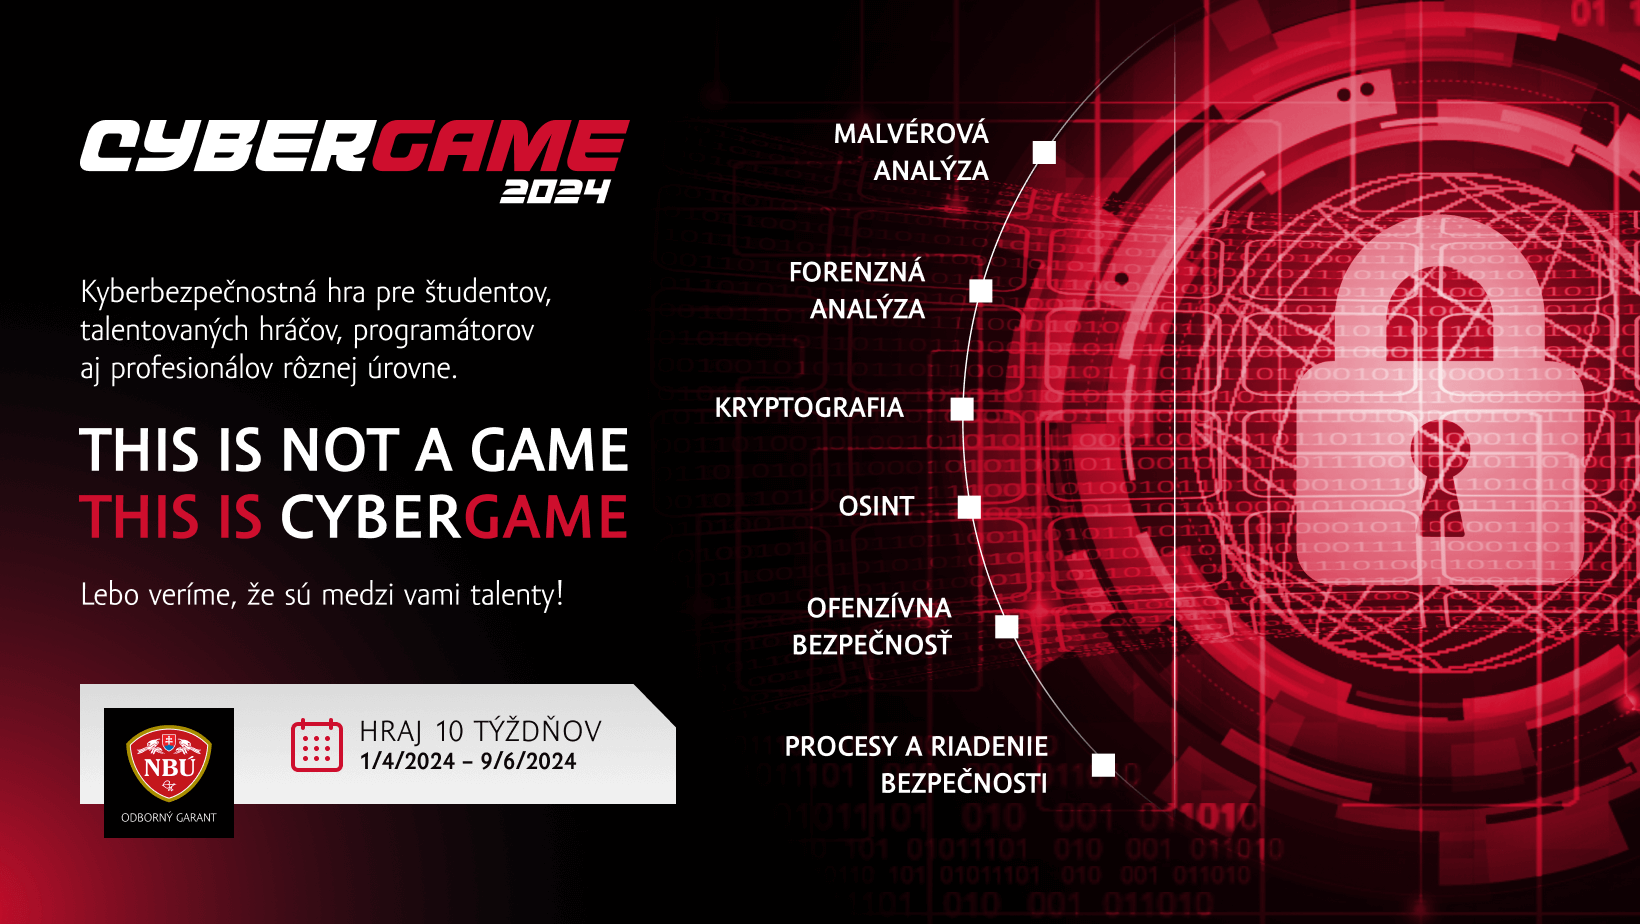 CyberGame 2024